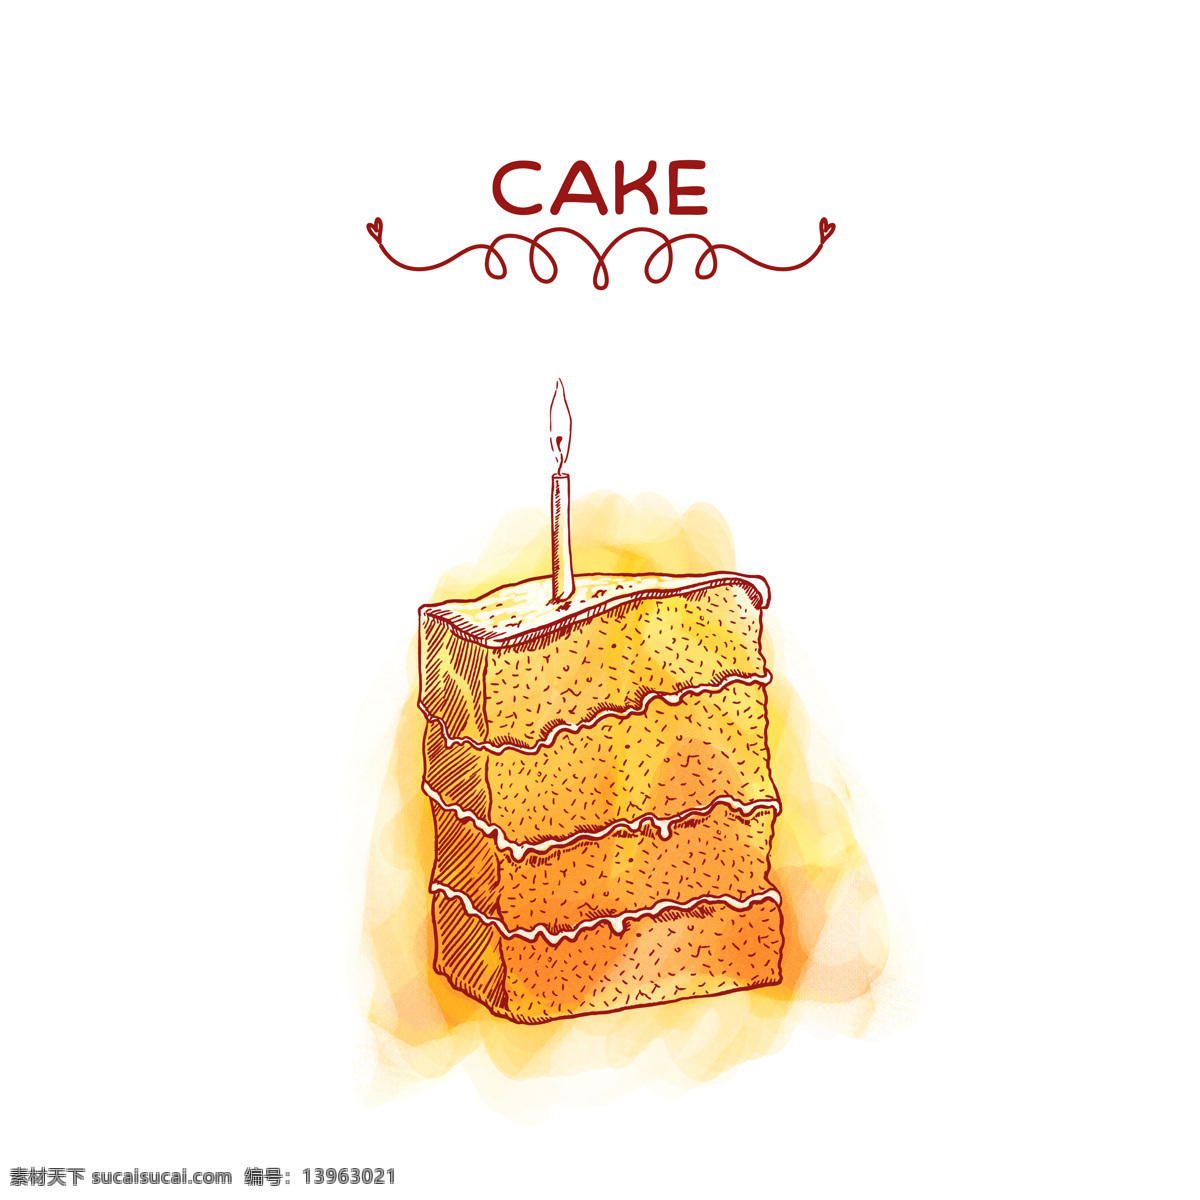 美味 的卡 通 蛋糕 手绘蛋糕 时尚元素 卡通蛋糕 生日蛋糕 蛋糕摄影 甜品 美食 生活百科 餐饮美食